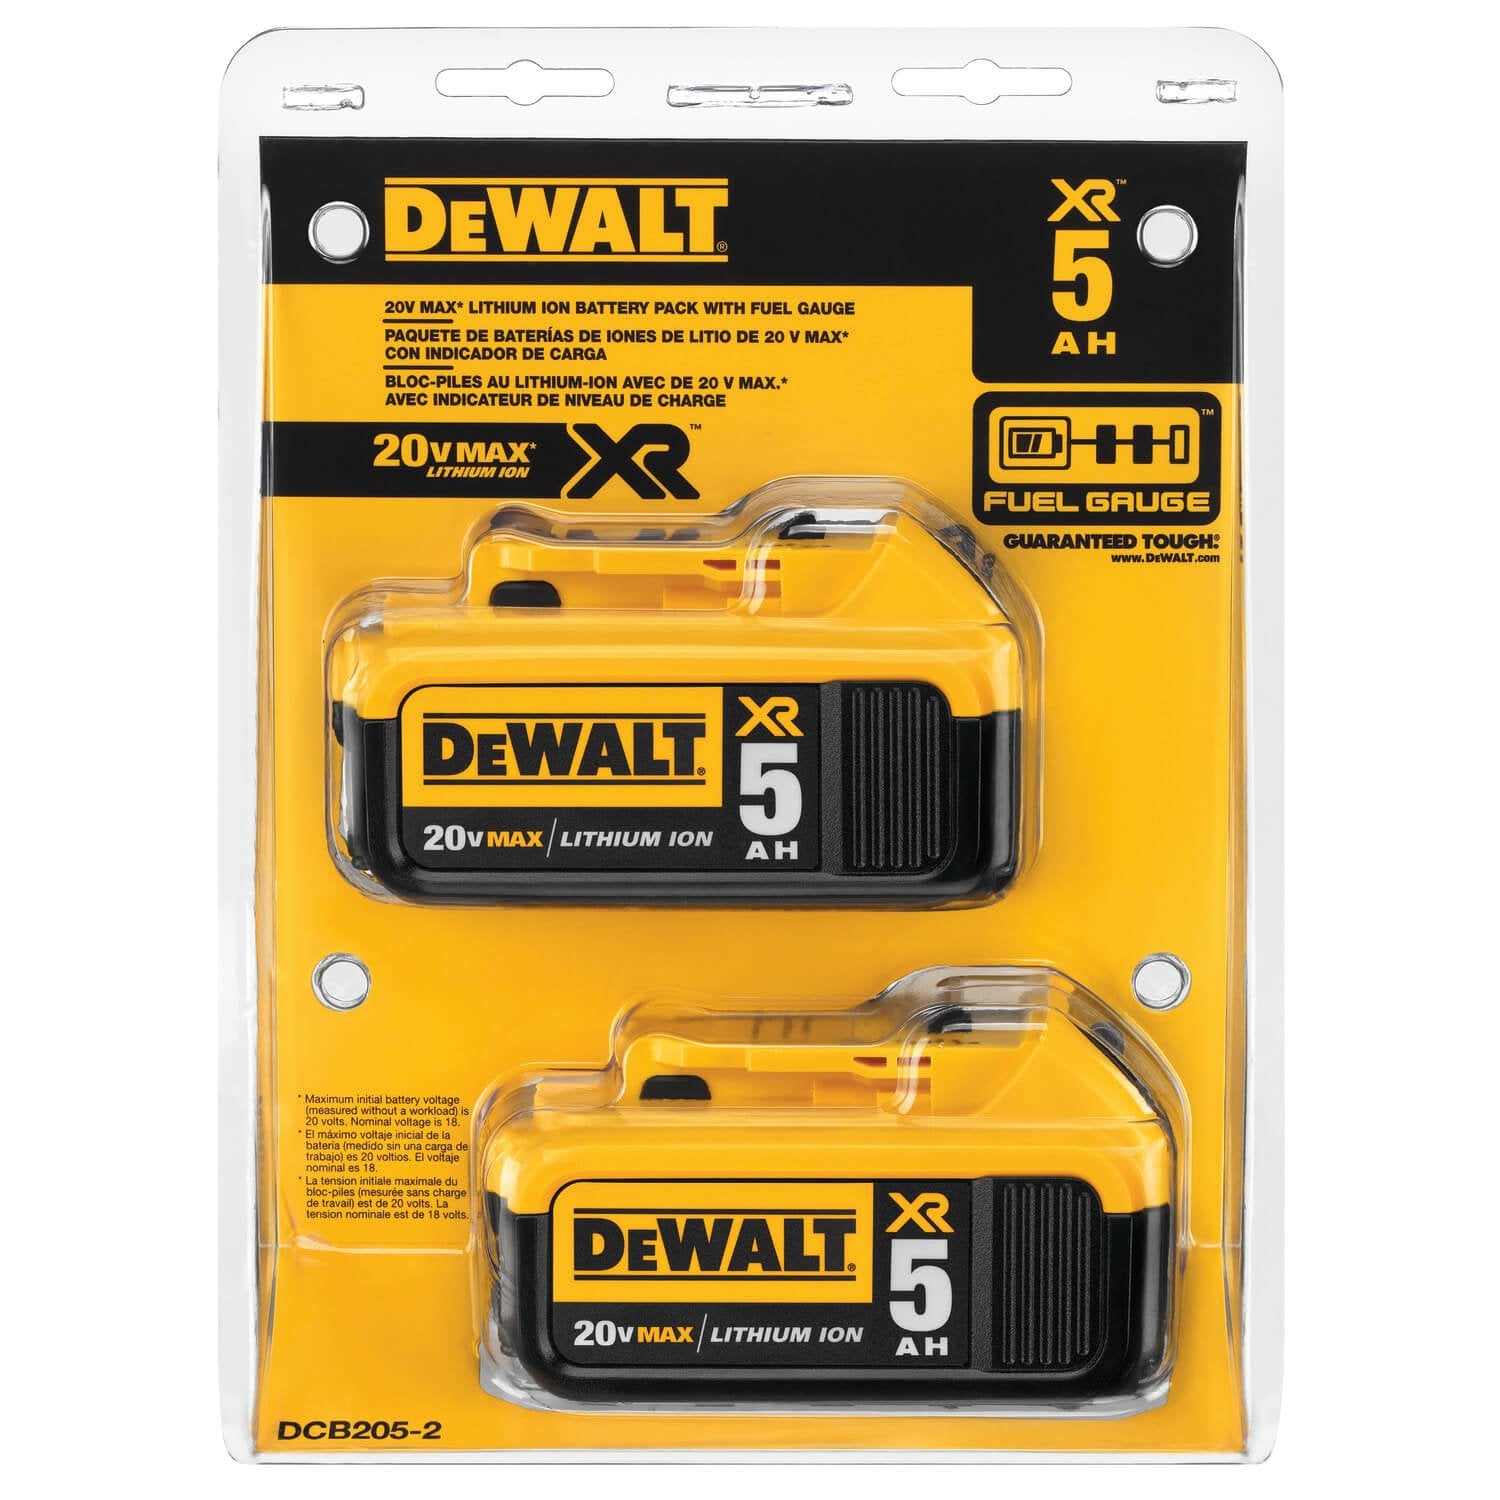 DEWALT DCB205-2 20V MAX XR 5.0Ah Lithium Ion Battery, 2-Pack